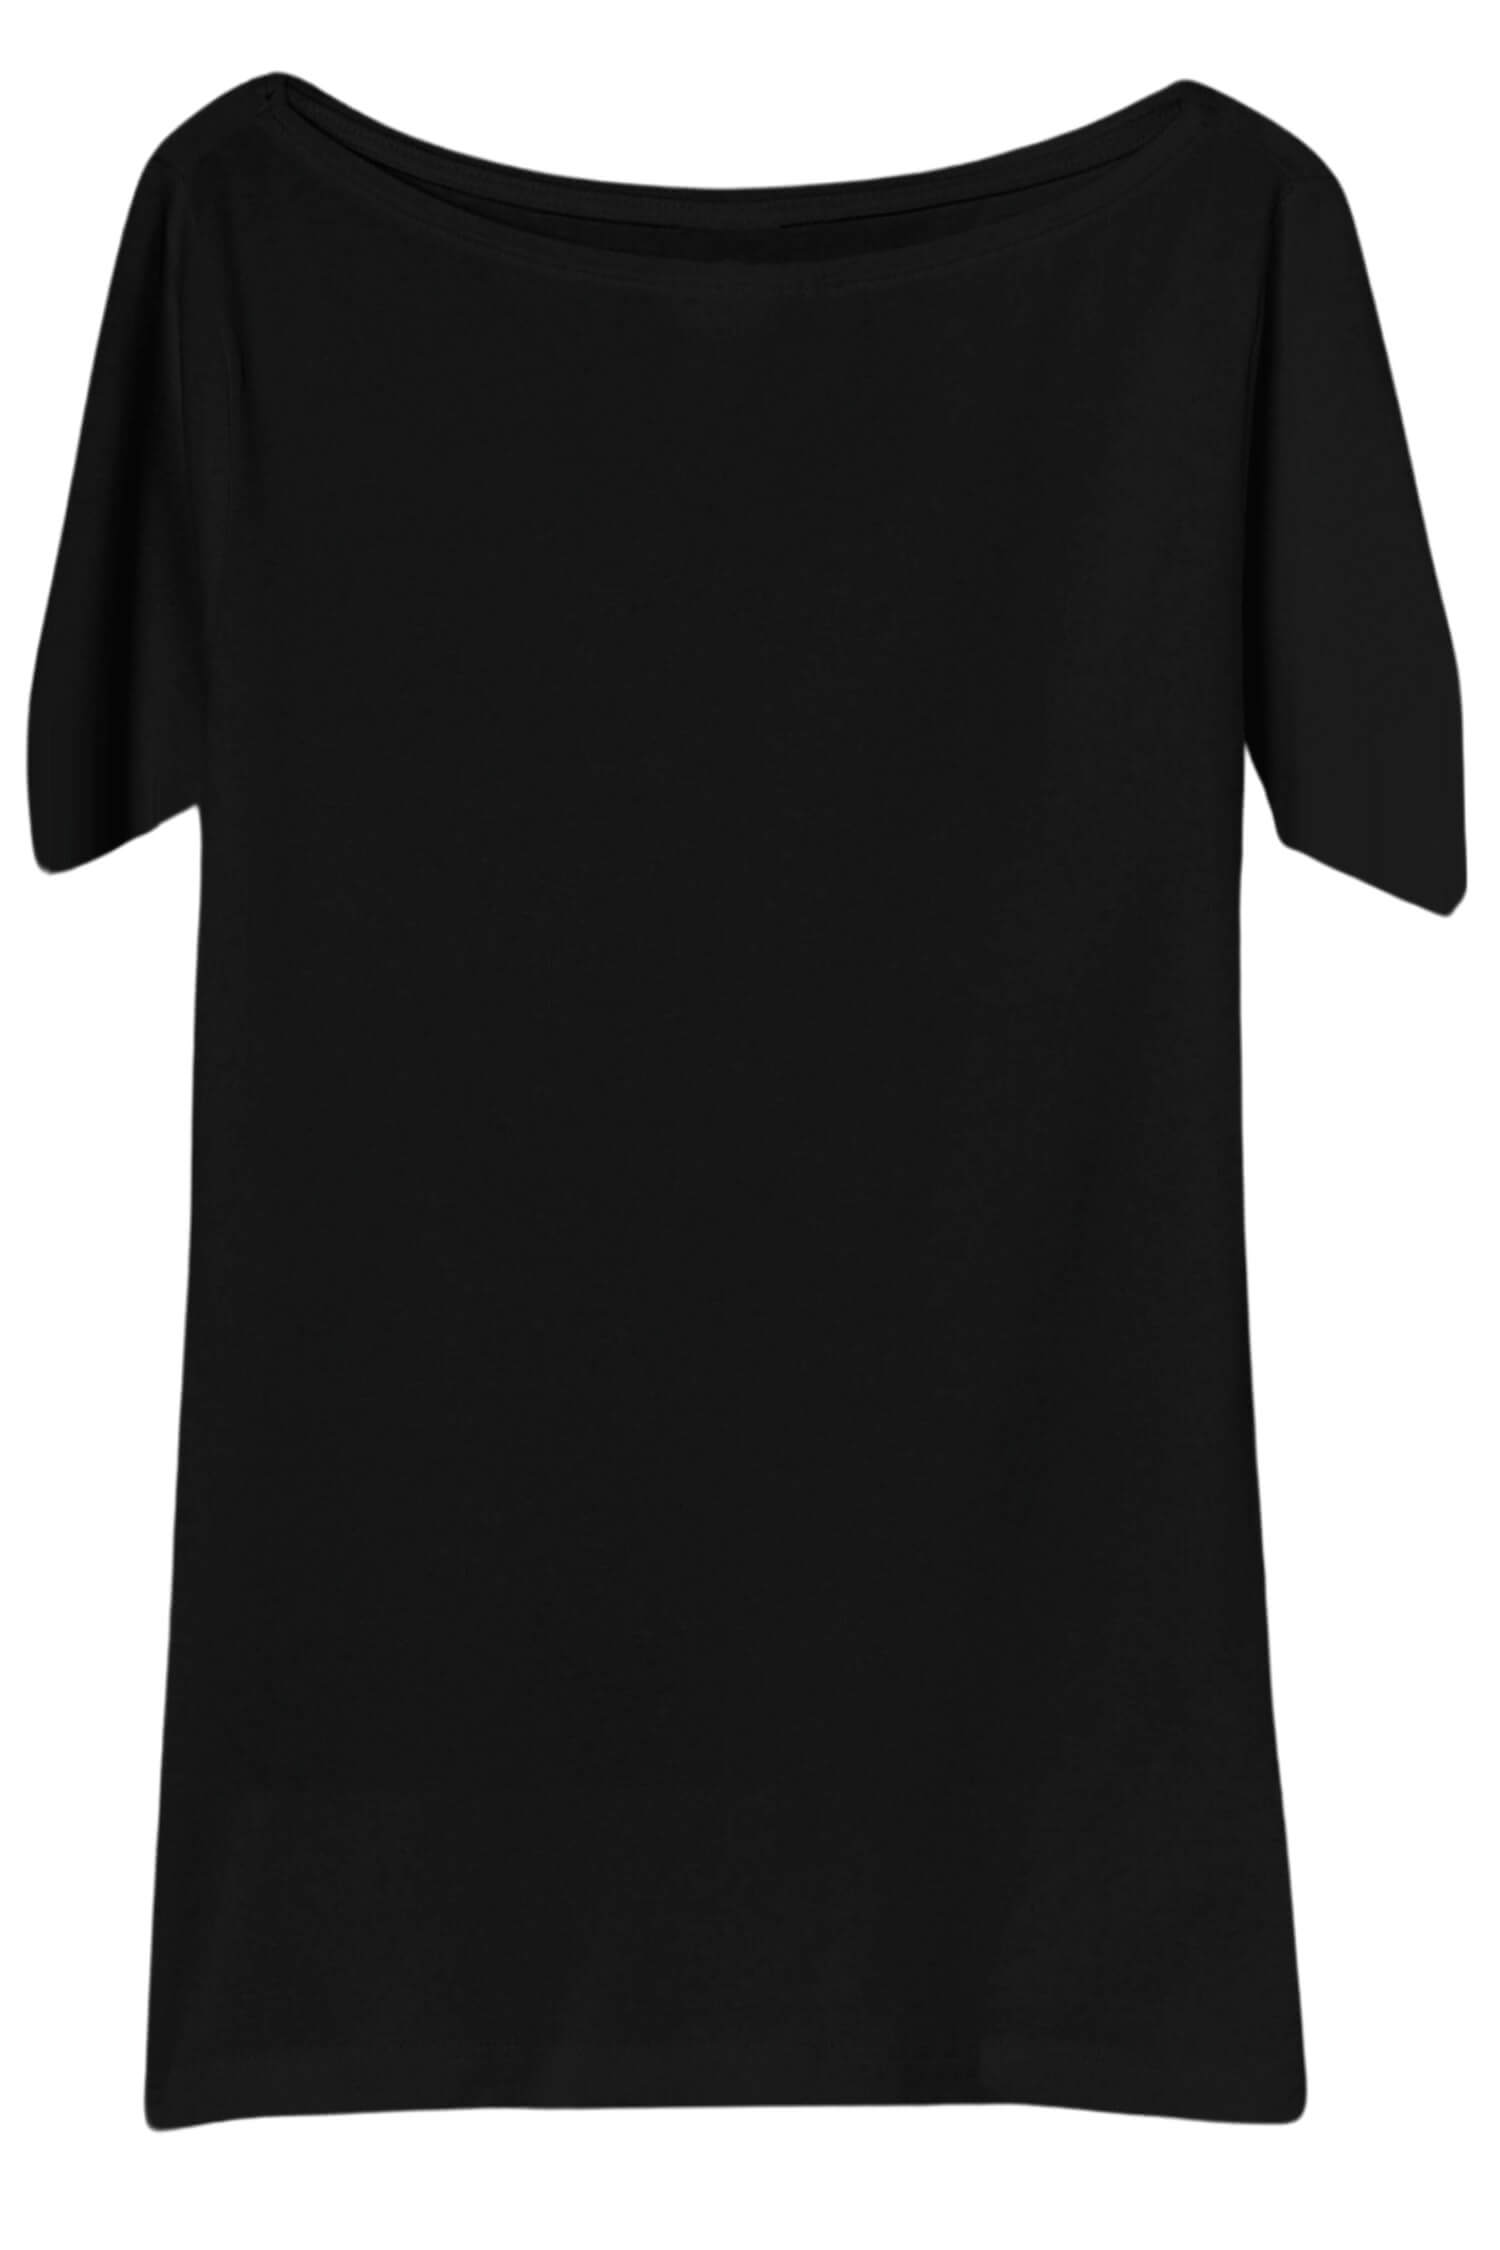 Danica dámské tričko s krátkým rukávem TSK-1005 L černá